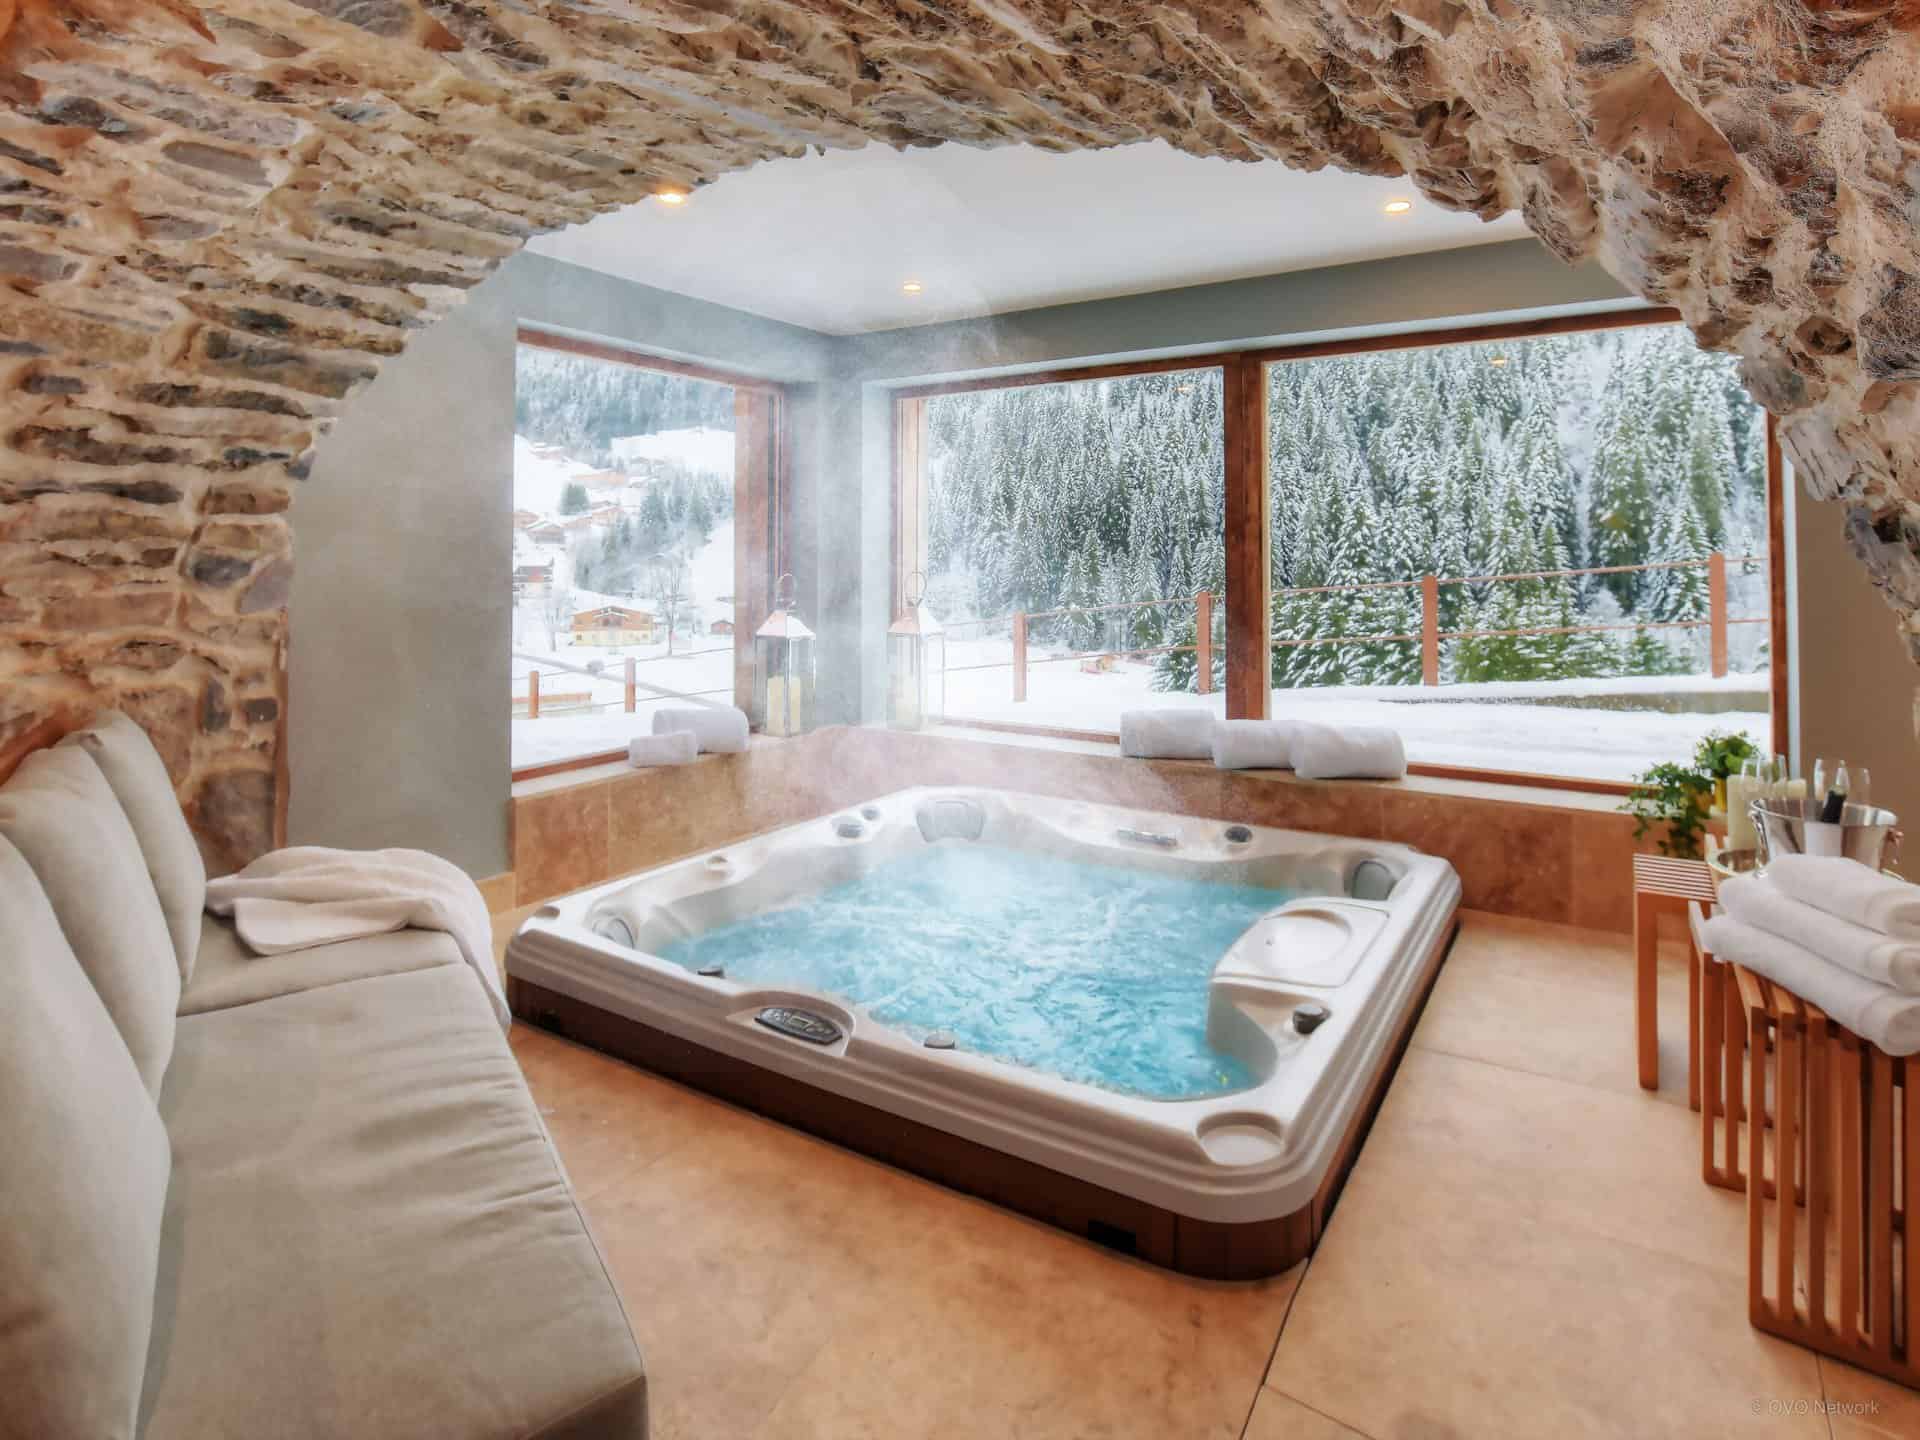 Charmante salle de jacuzzi dans un chalet dans les Alpes avec baies vitrées donnant sur le paysage. 